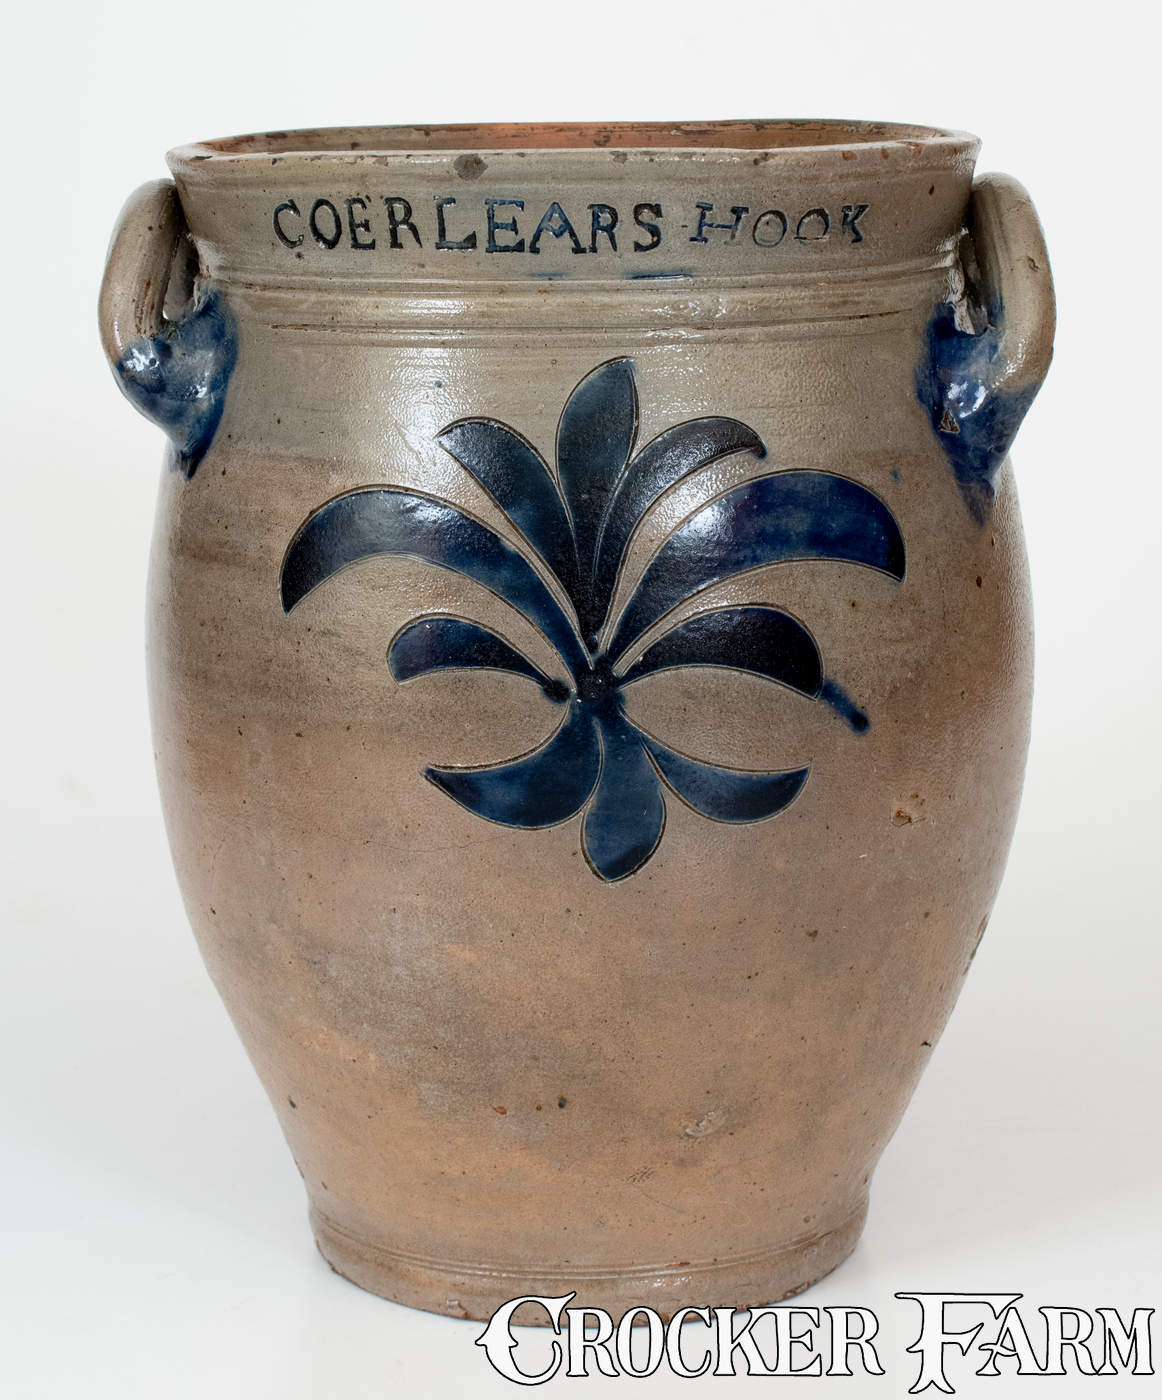 COERLEARS HOOK / N. YORK Stoneware Jar